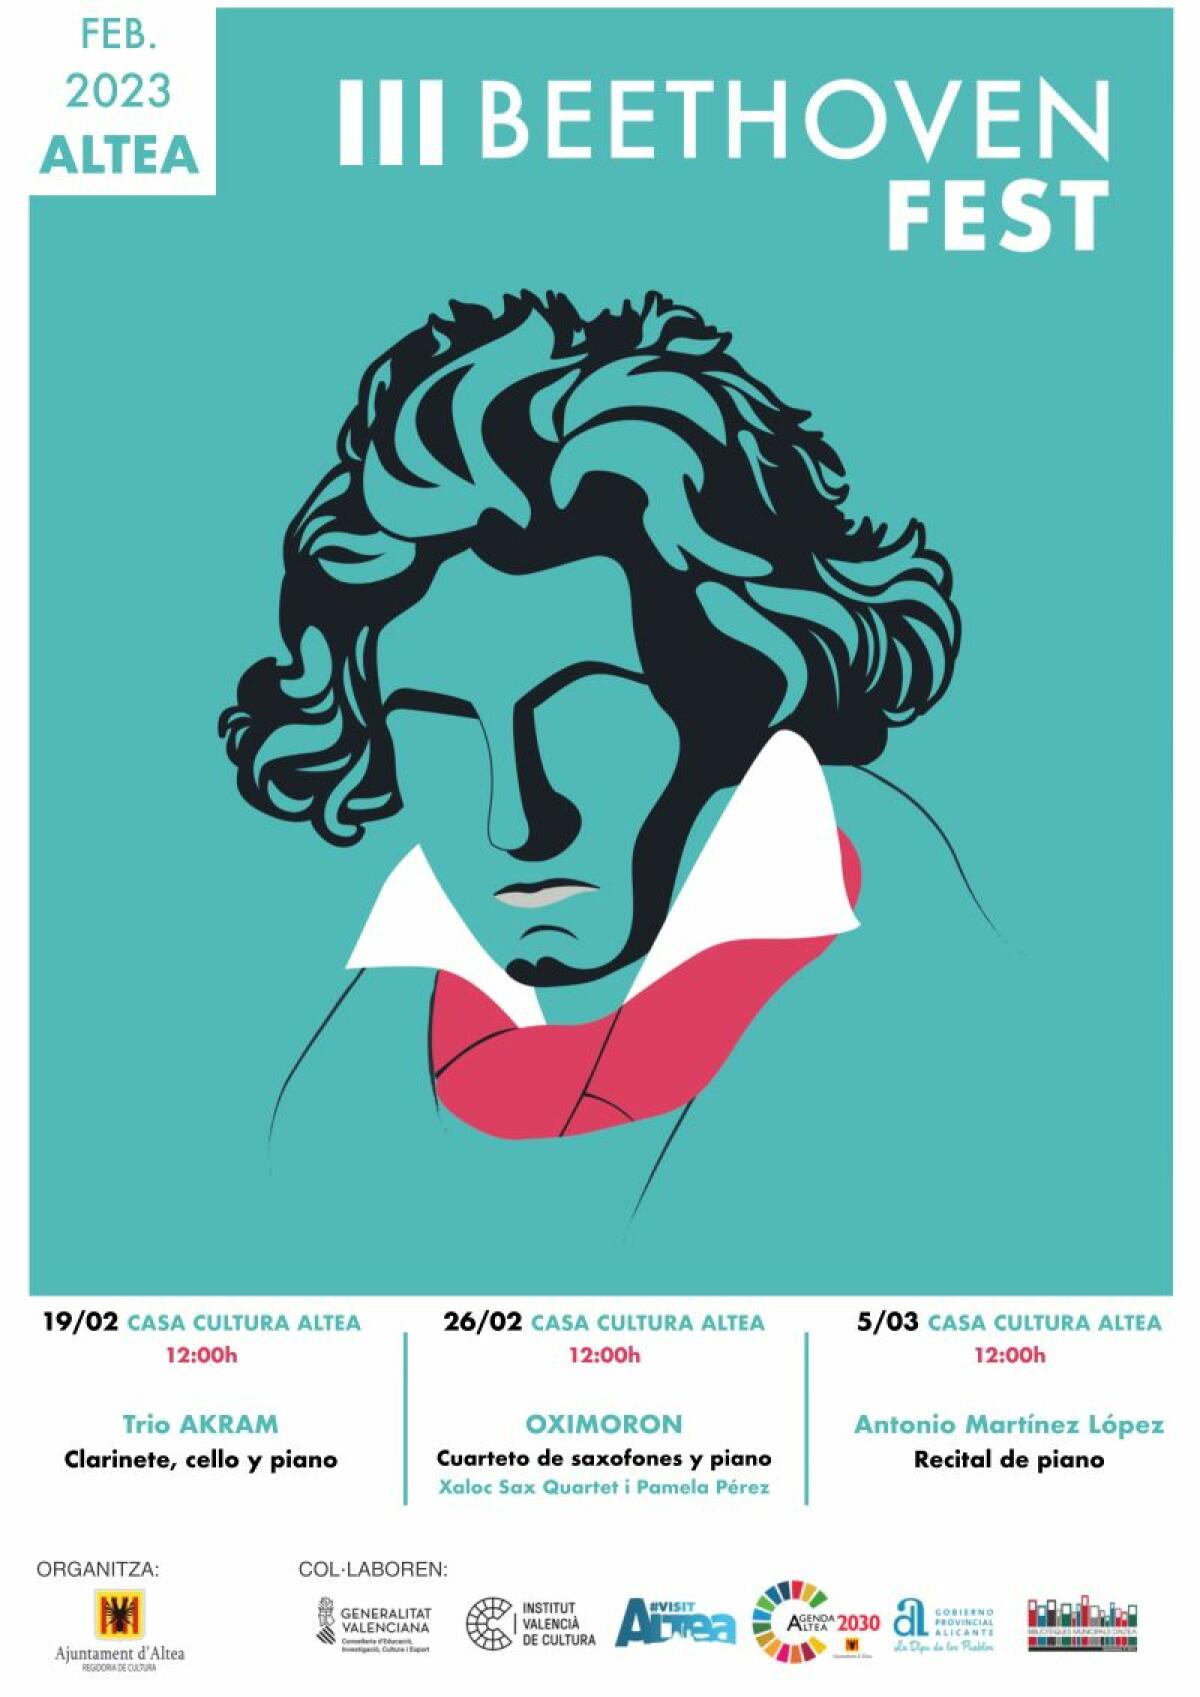 Altea i el Beethoven Fest vos proposen un pla per al diumenge